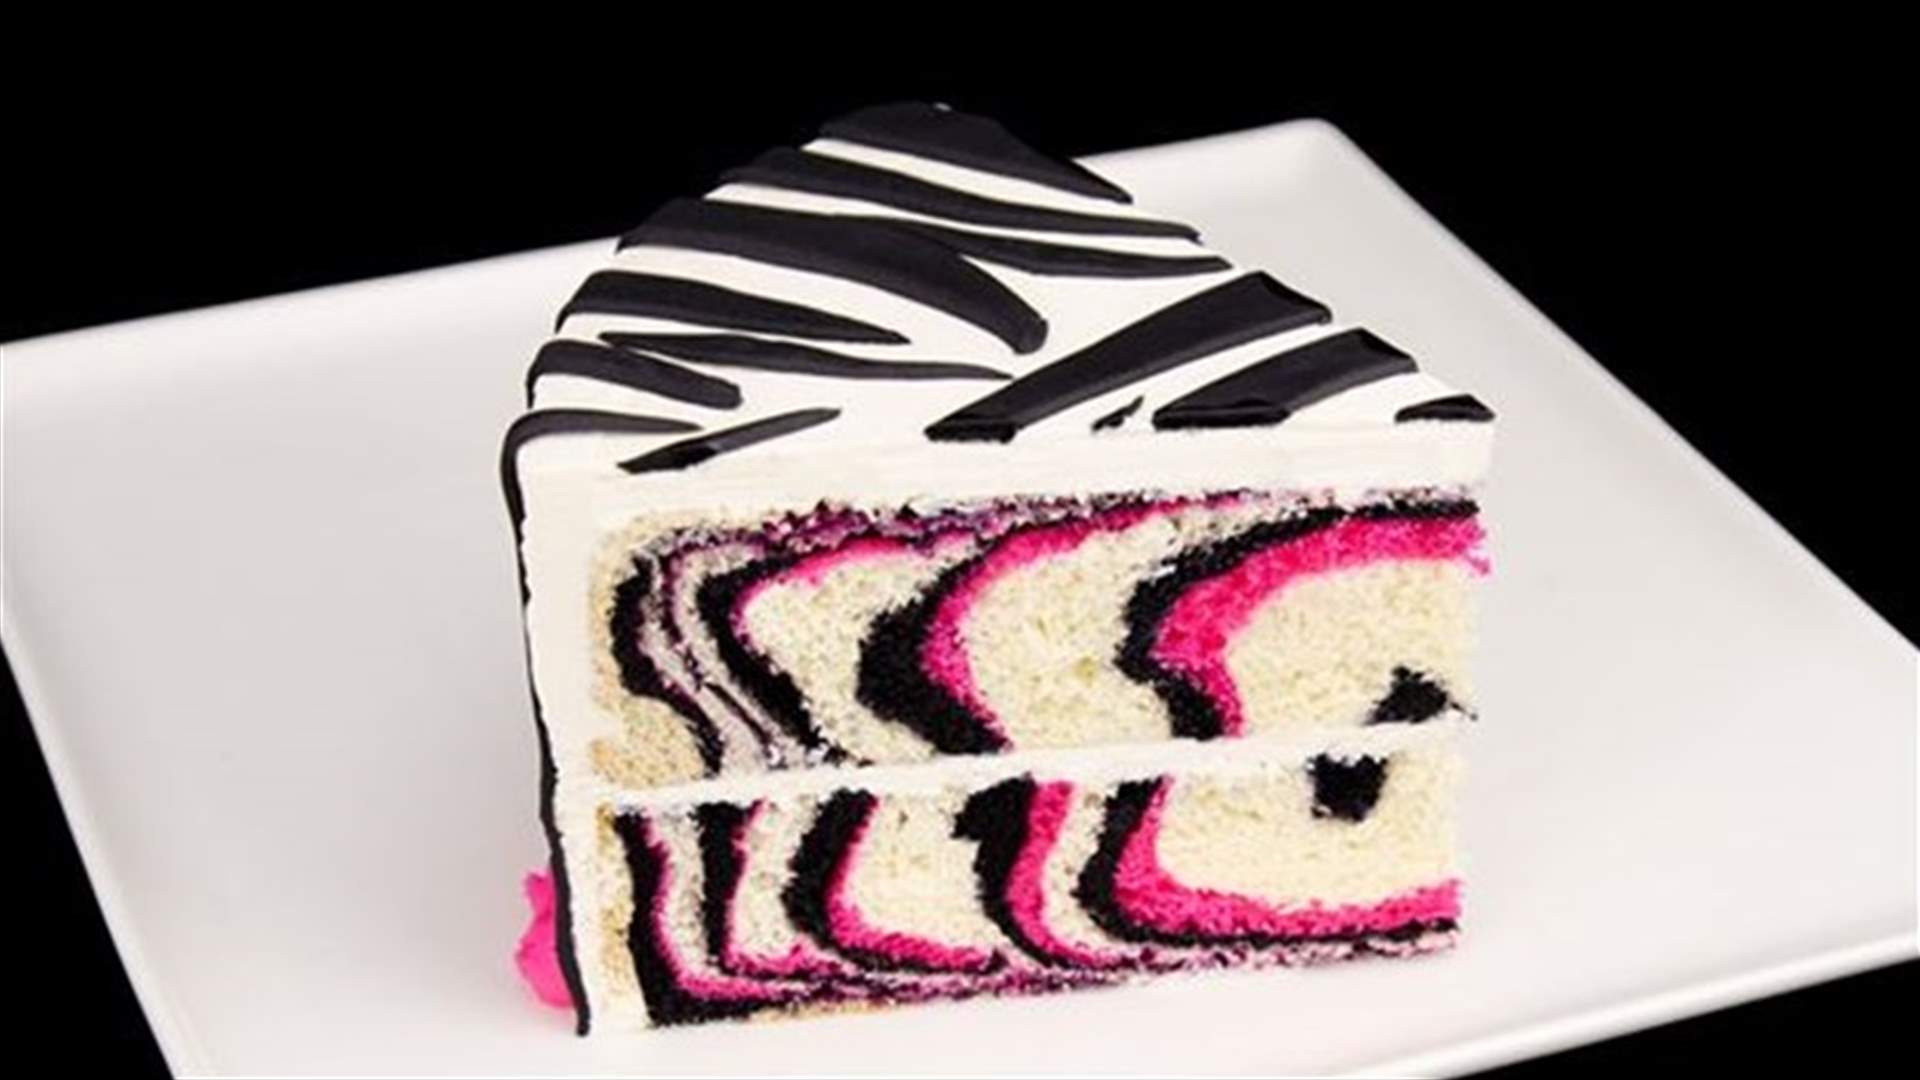 بالفيديو: تعلموا كيفية تحضير كعكة مميزة بالخطوط البيضاء والسوداء